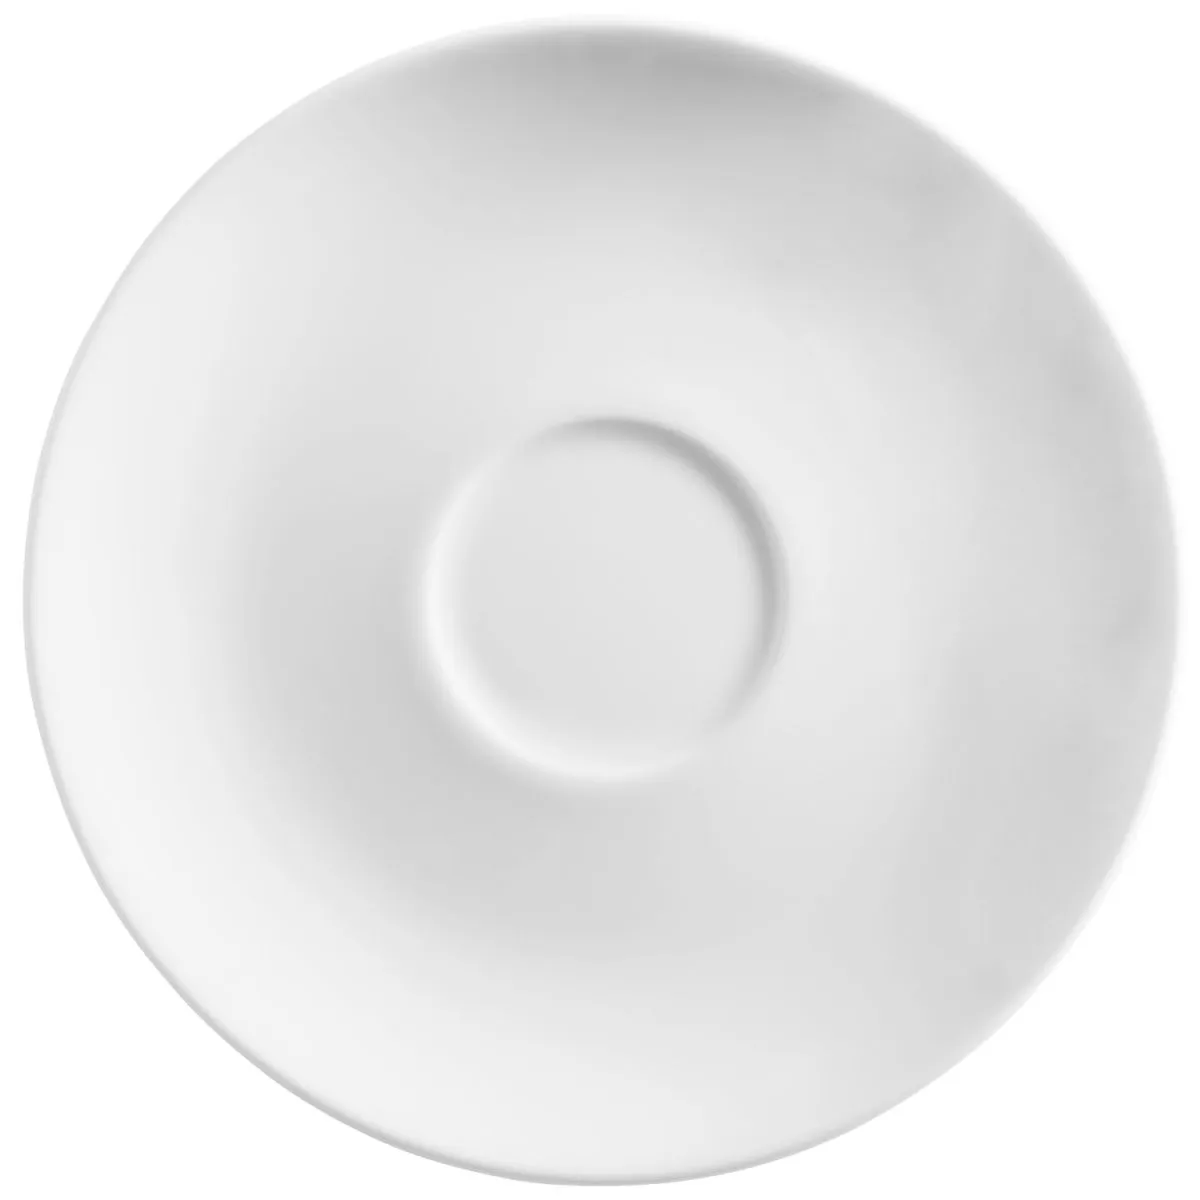 Piattino espresso Mixor VEGA; 12 cm (Ø); bianco; rotonda; 6 pz. / confezione